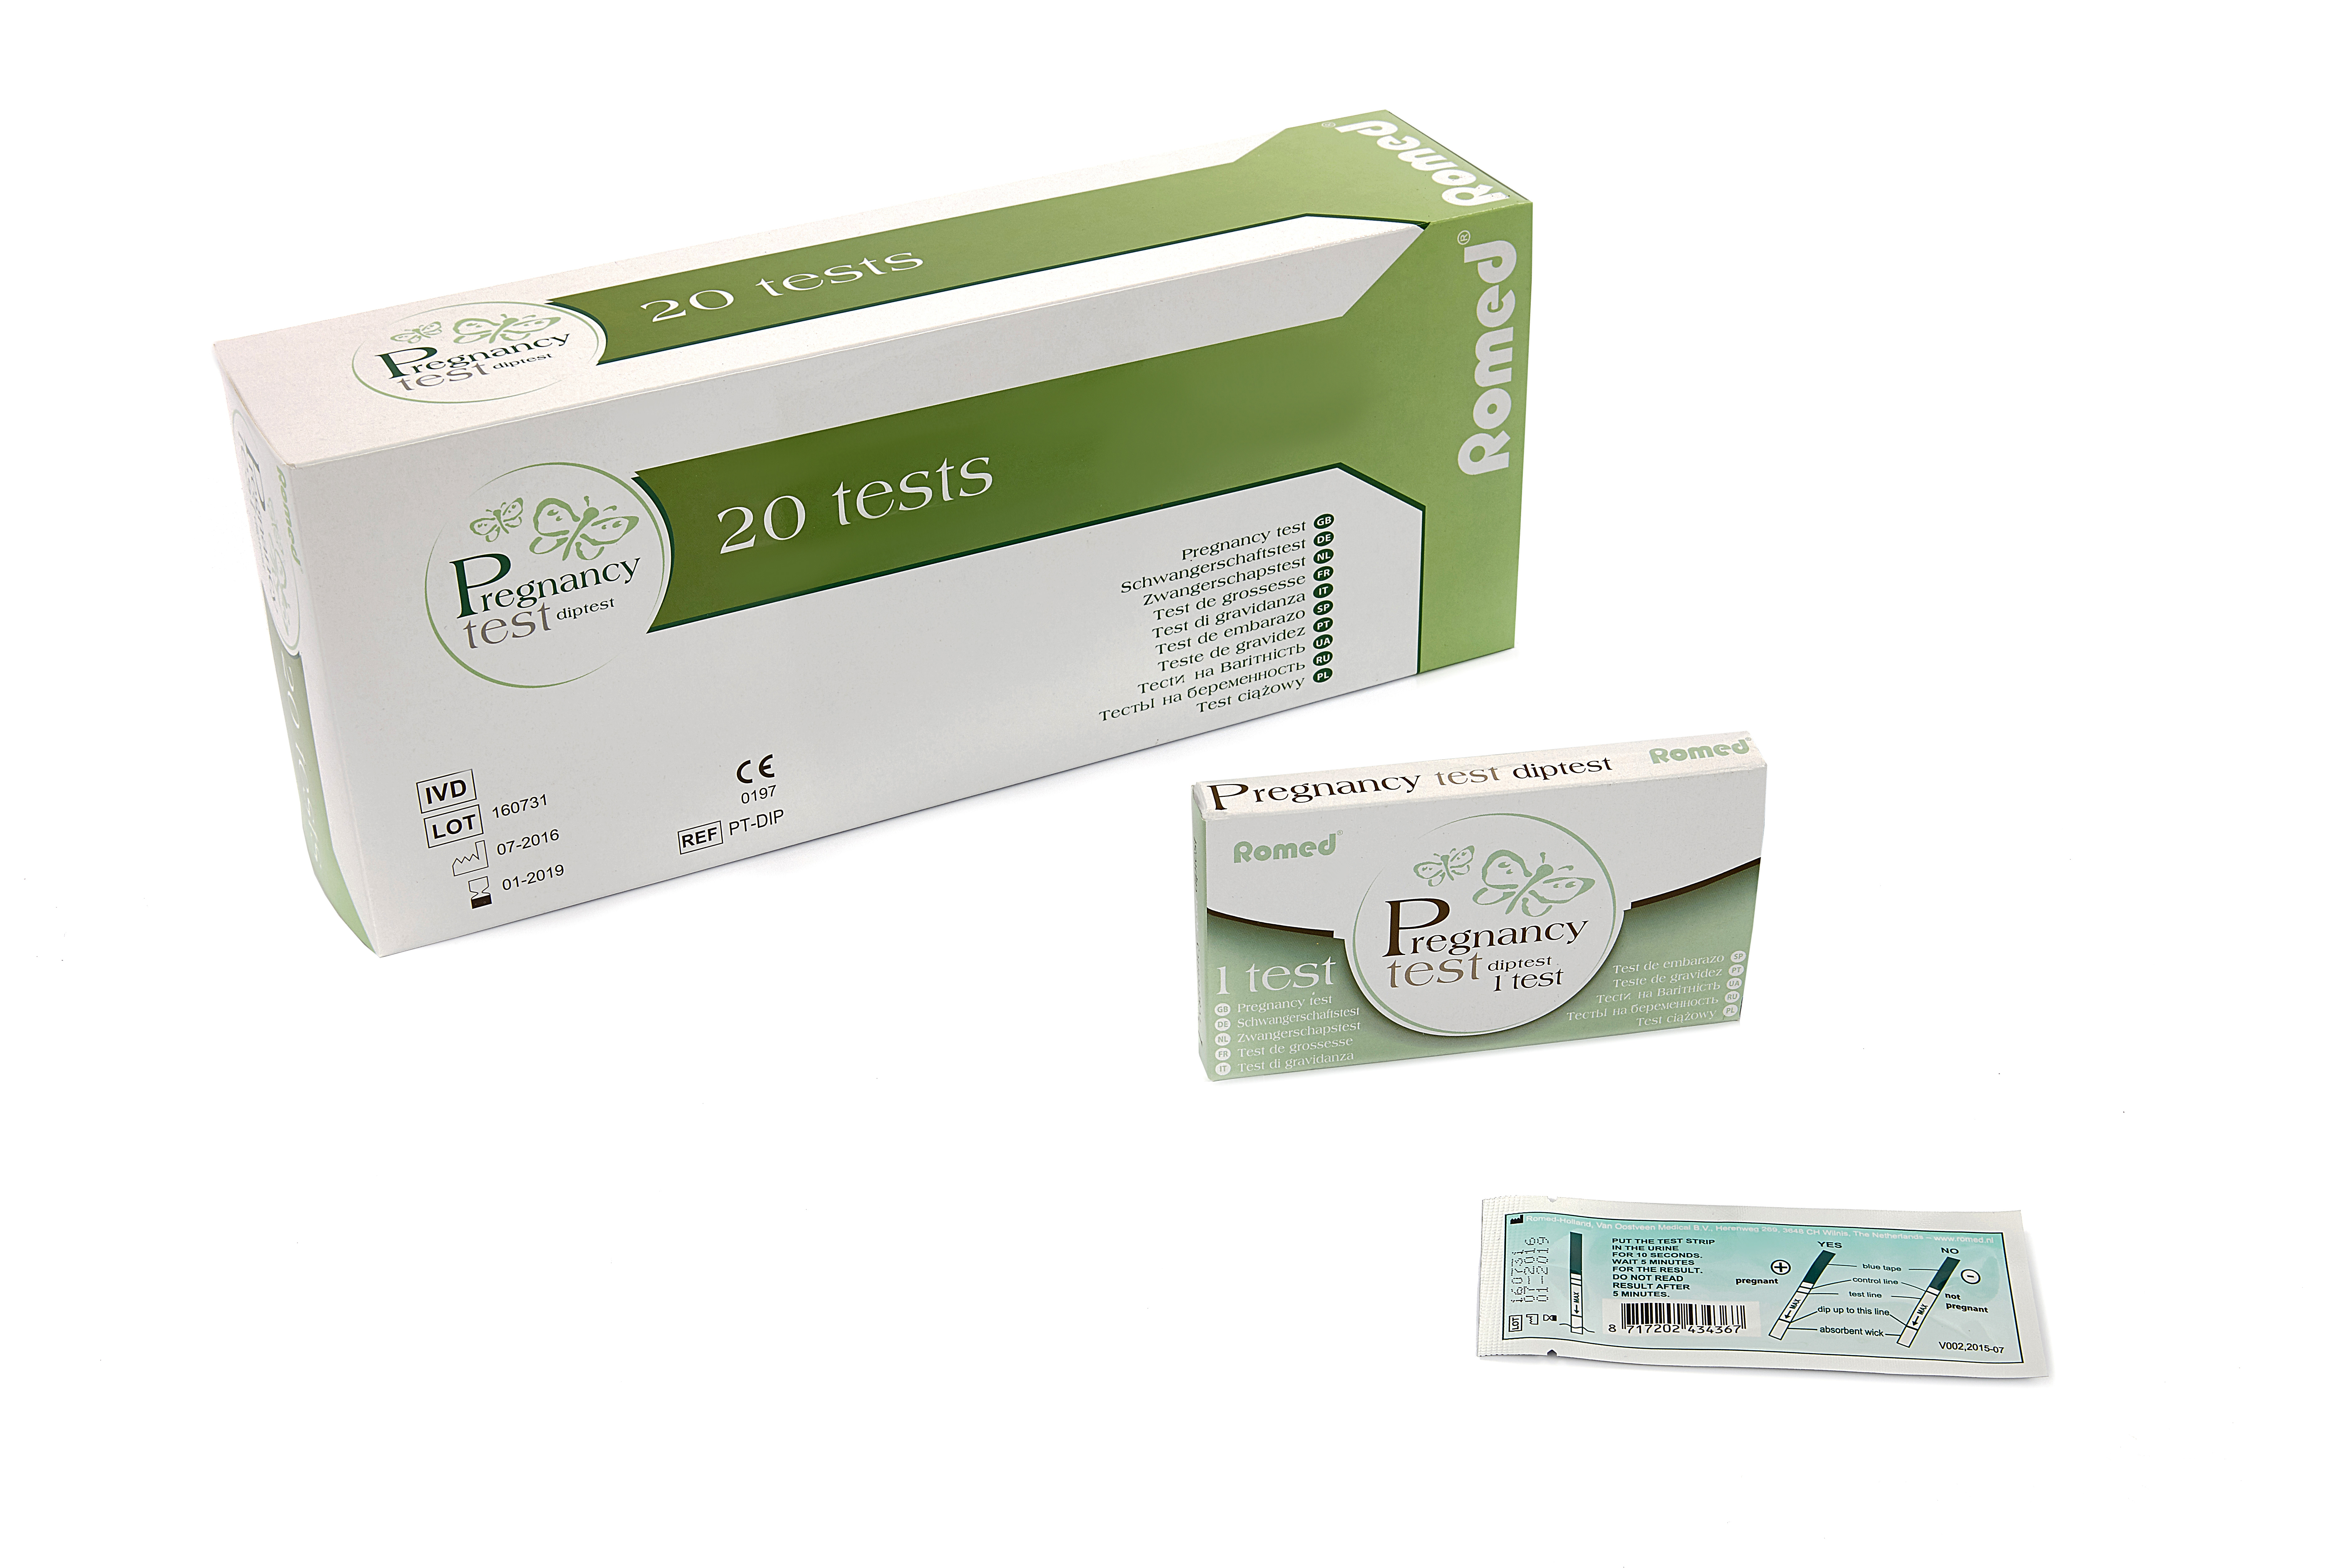 PT-DIP Tests de grossesse Romed, de type bandelette, conditionnés individuellement dans une boîte, 20 unités par sac plastique, 25 x 20 unités = 500 unités par carton.